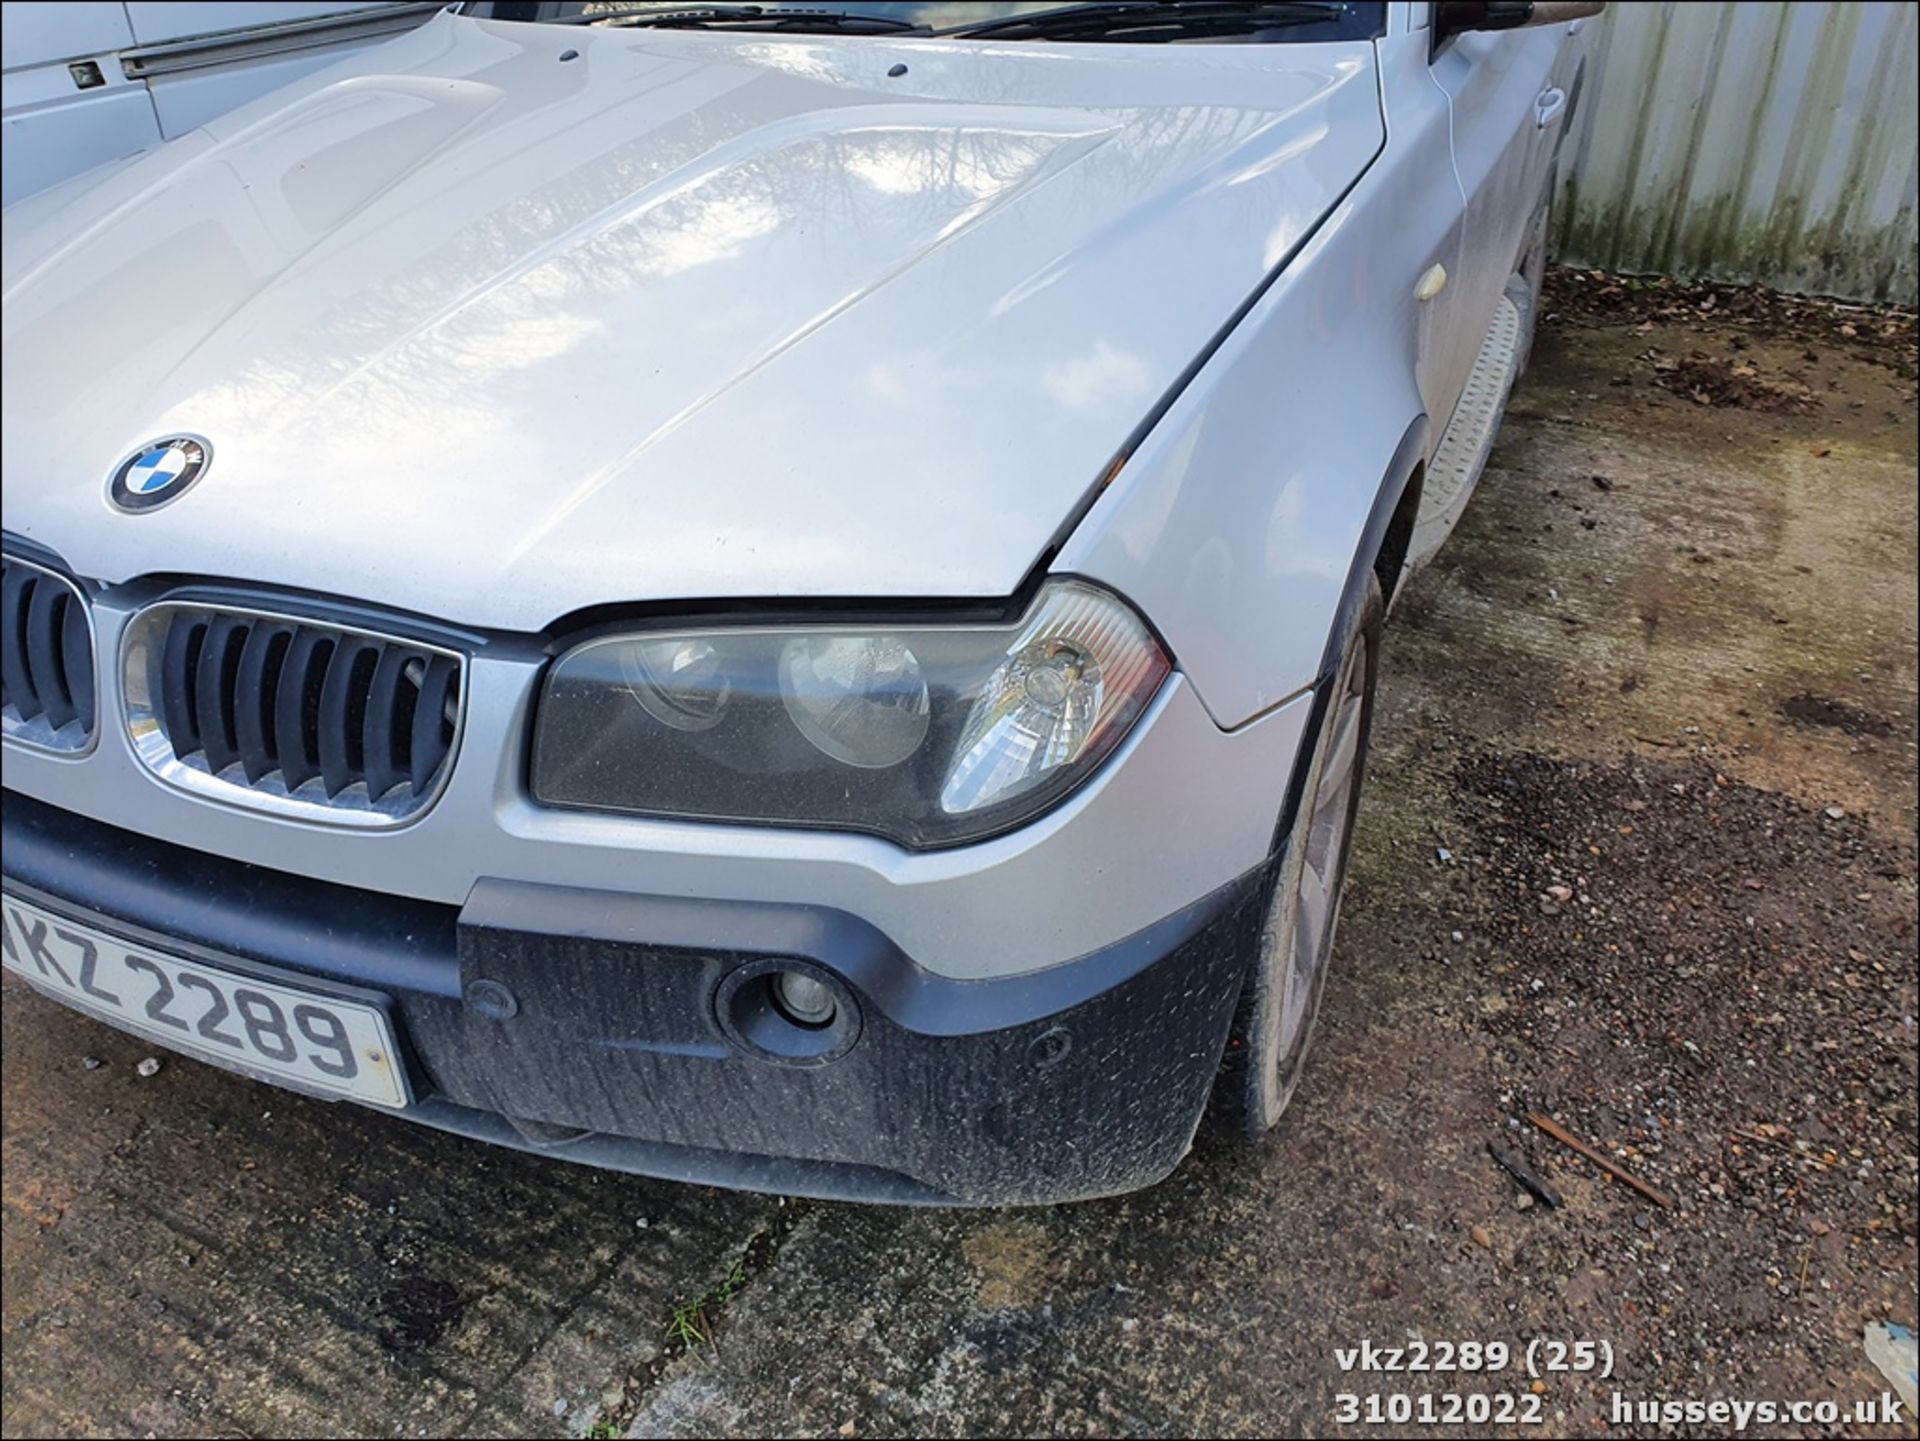 2005 BMW X3 D SPORT - 1995cc 5dr Estate (Silver) - Image 25 of 27